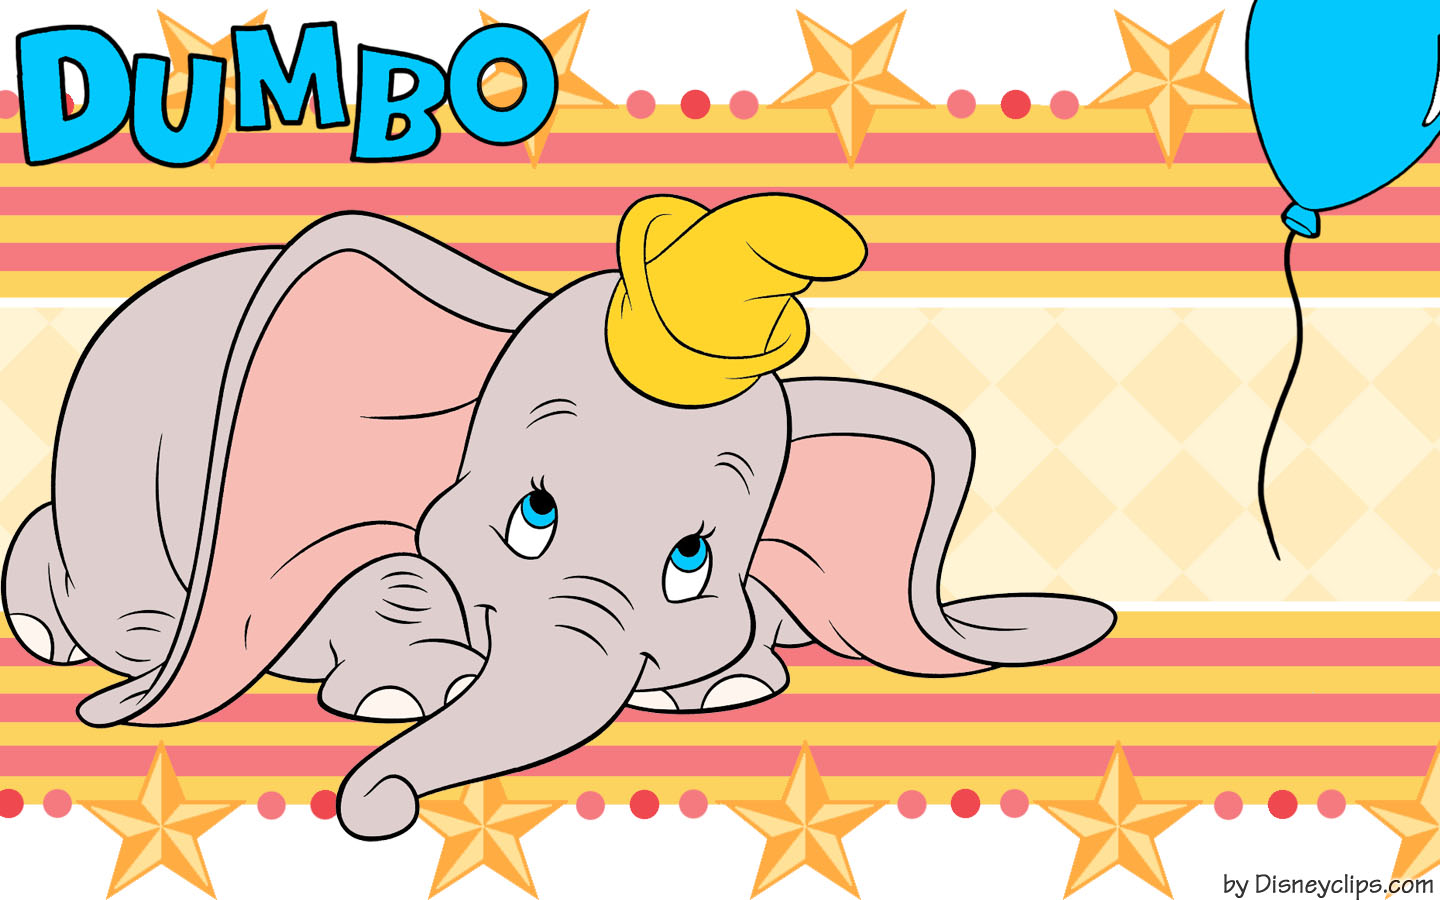 Disneys dumbo circus wallpaper